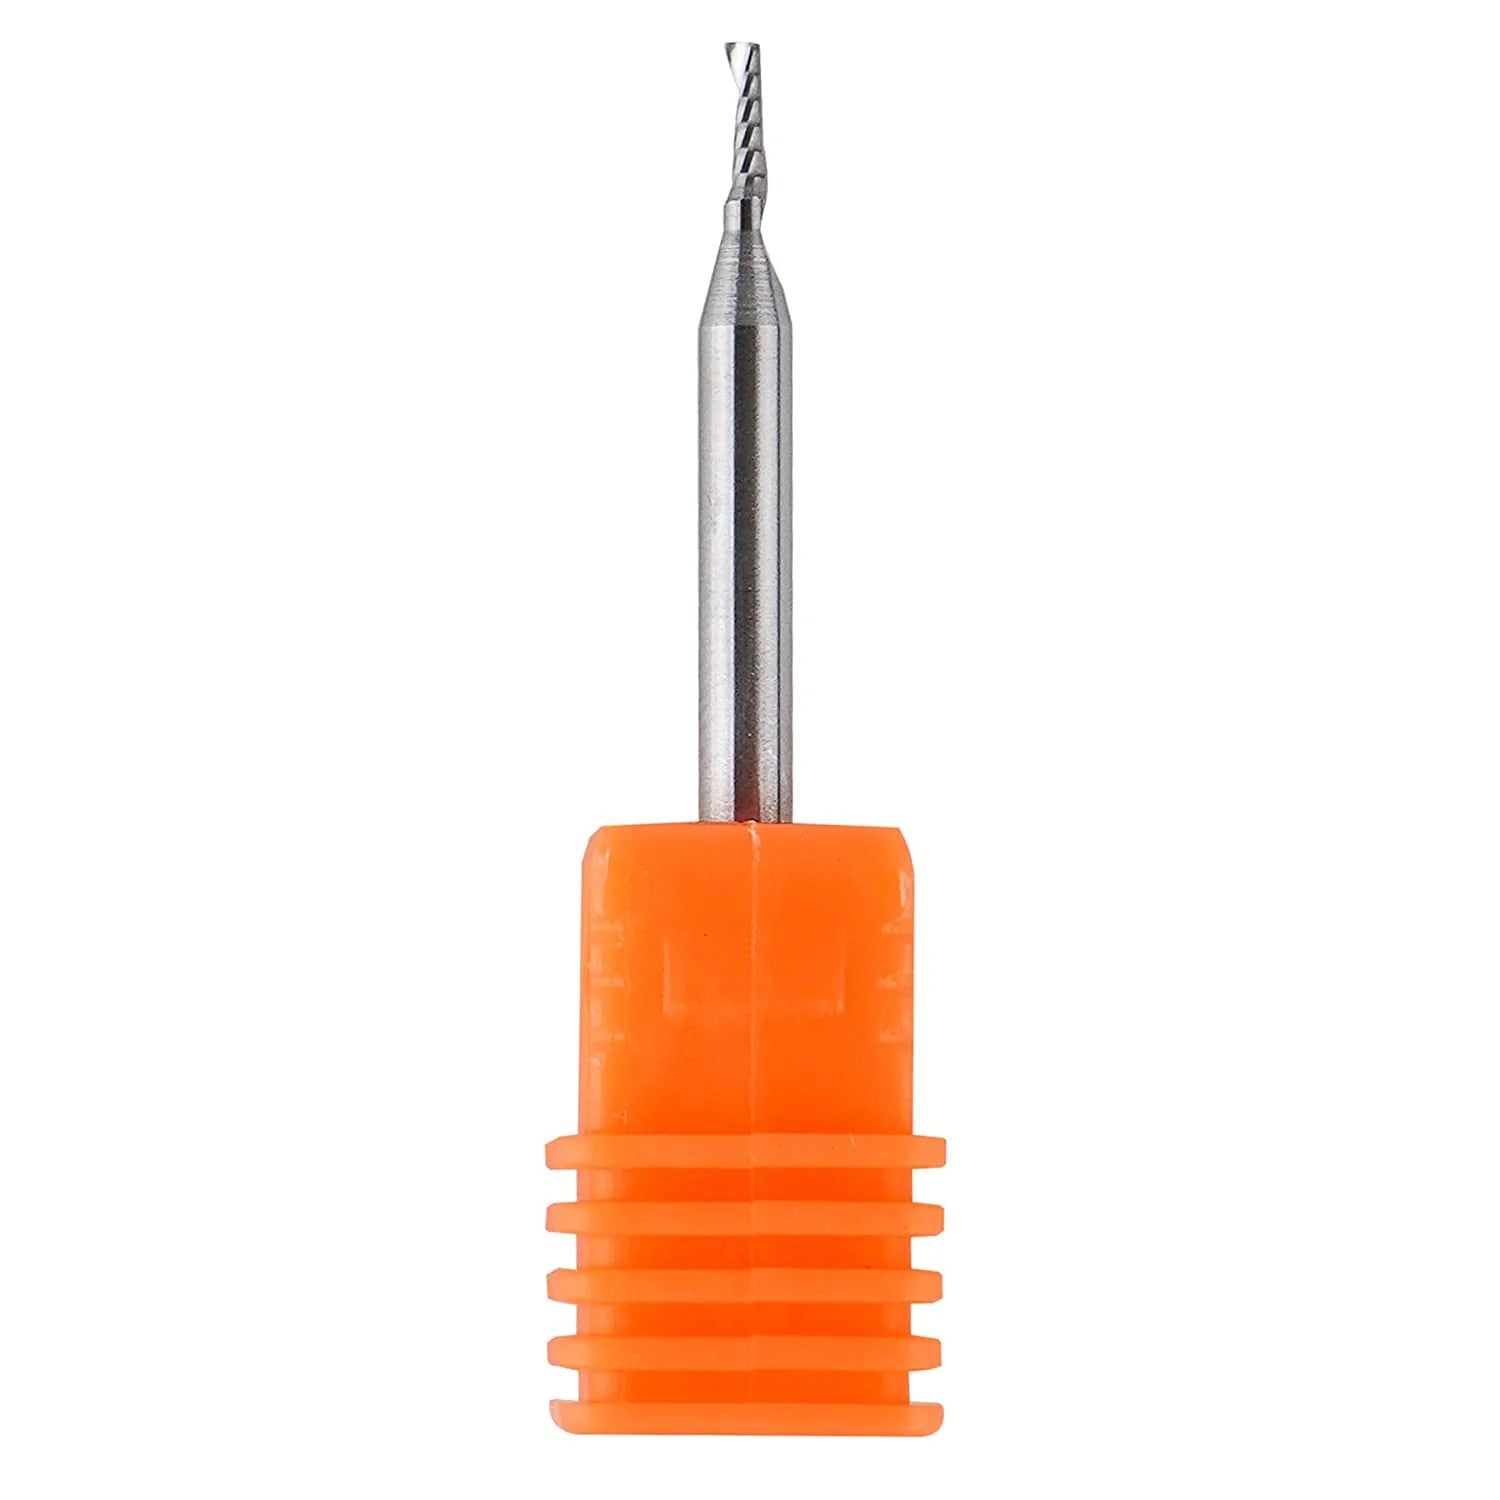 SpeTool CNC SC Spiral O Flute Plastic Cutting 1/16" Diam UpCut Router Bit